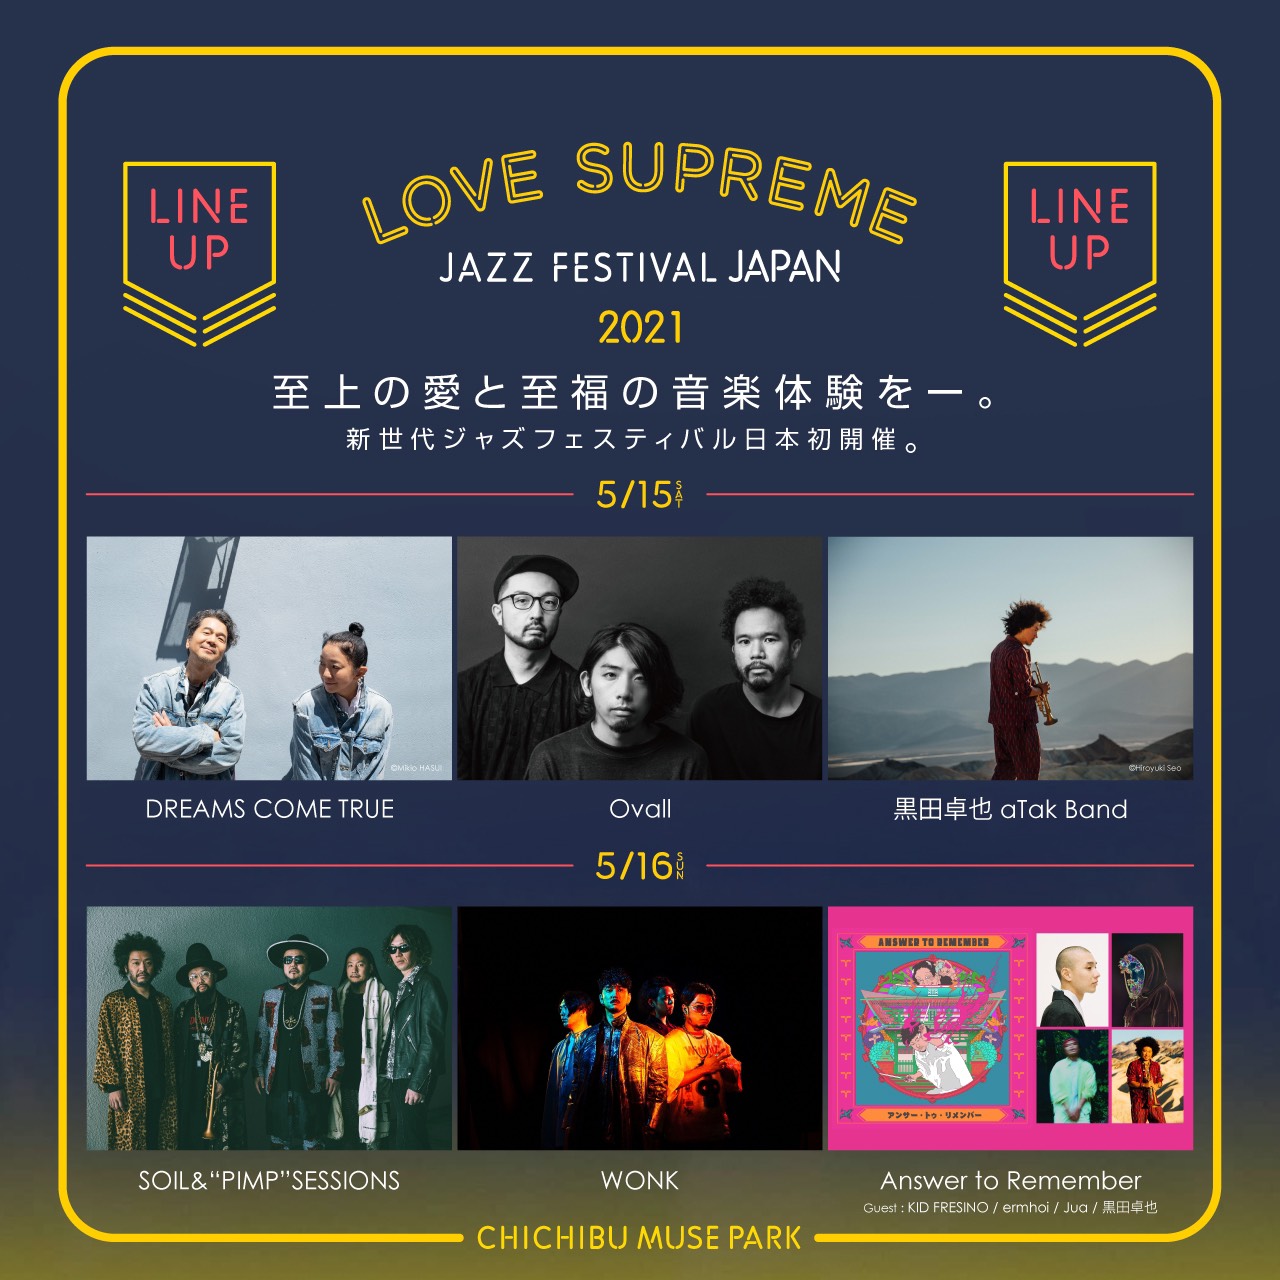 Love supreme jazz festival japan 2022